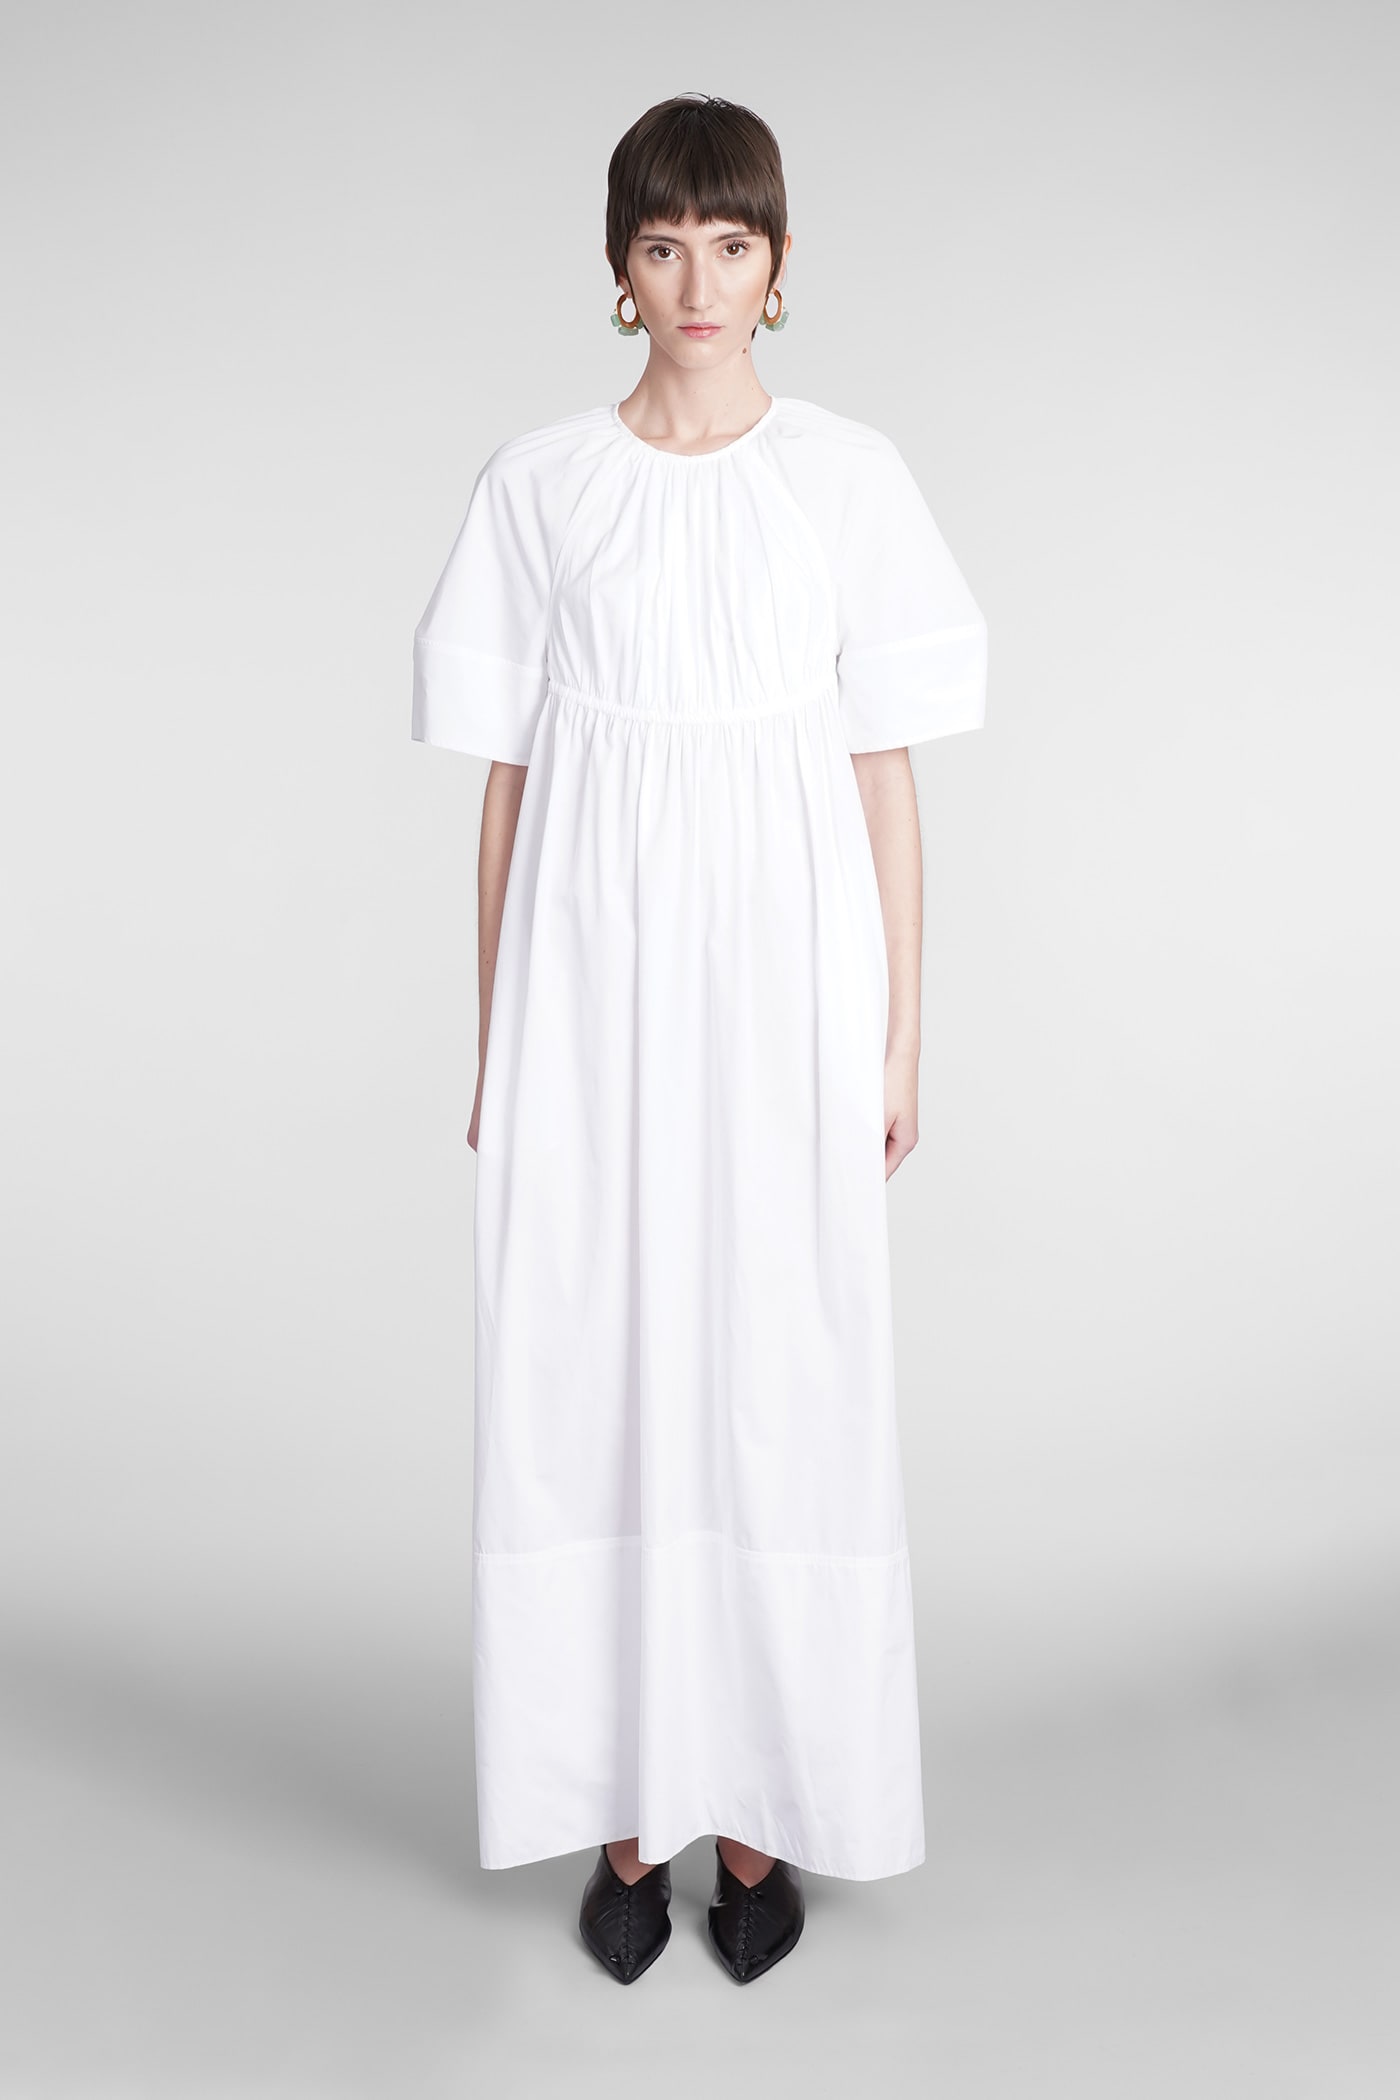 Jil Sander Dress In White Cotton